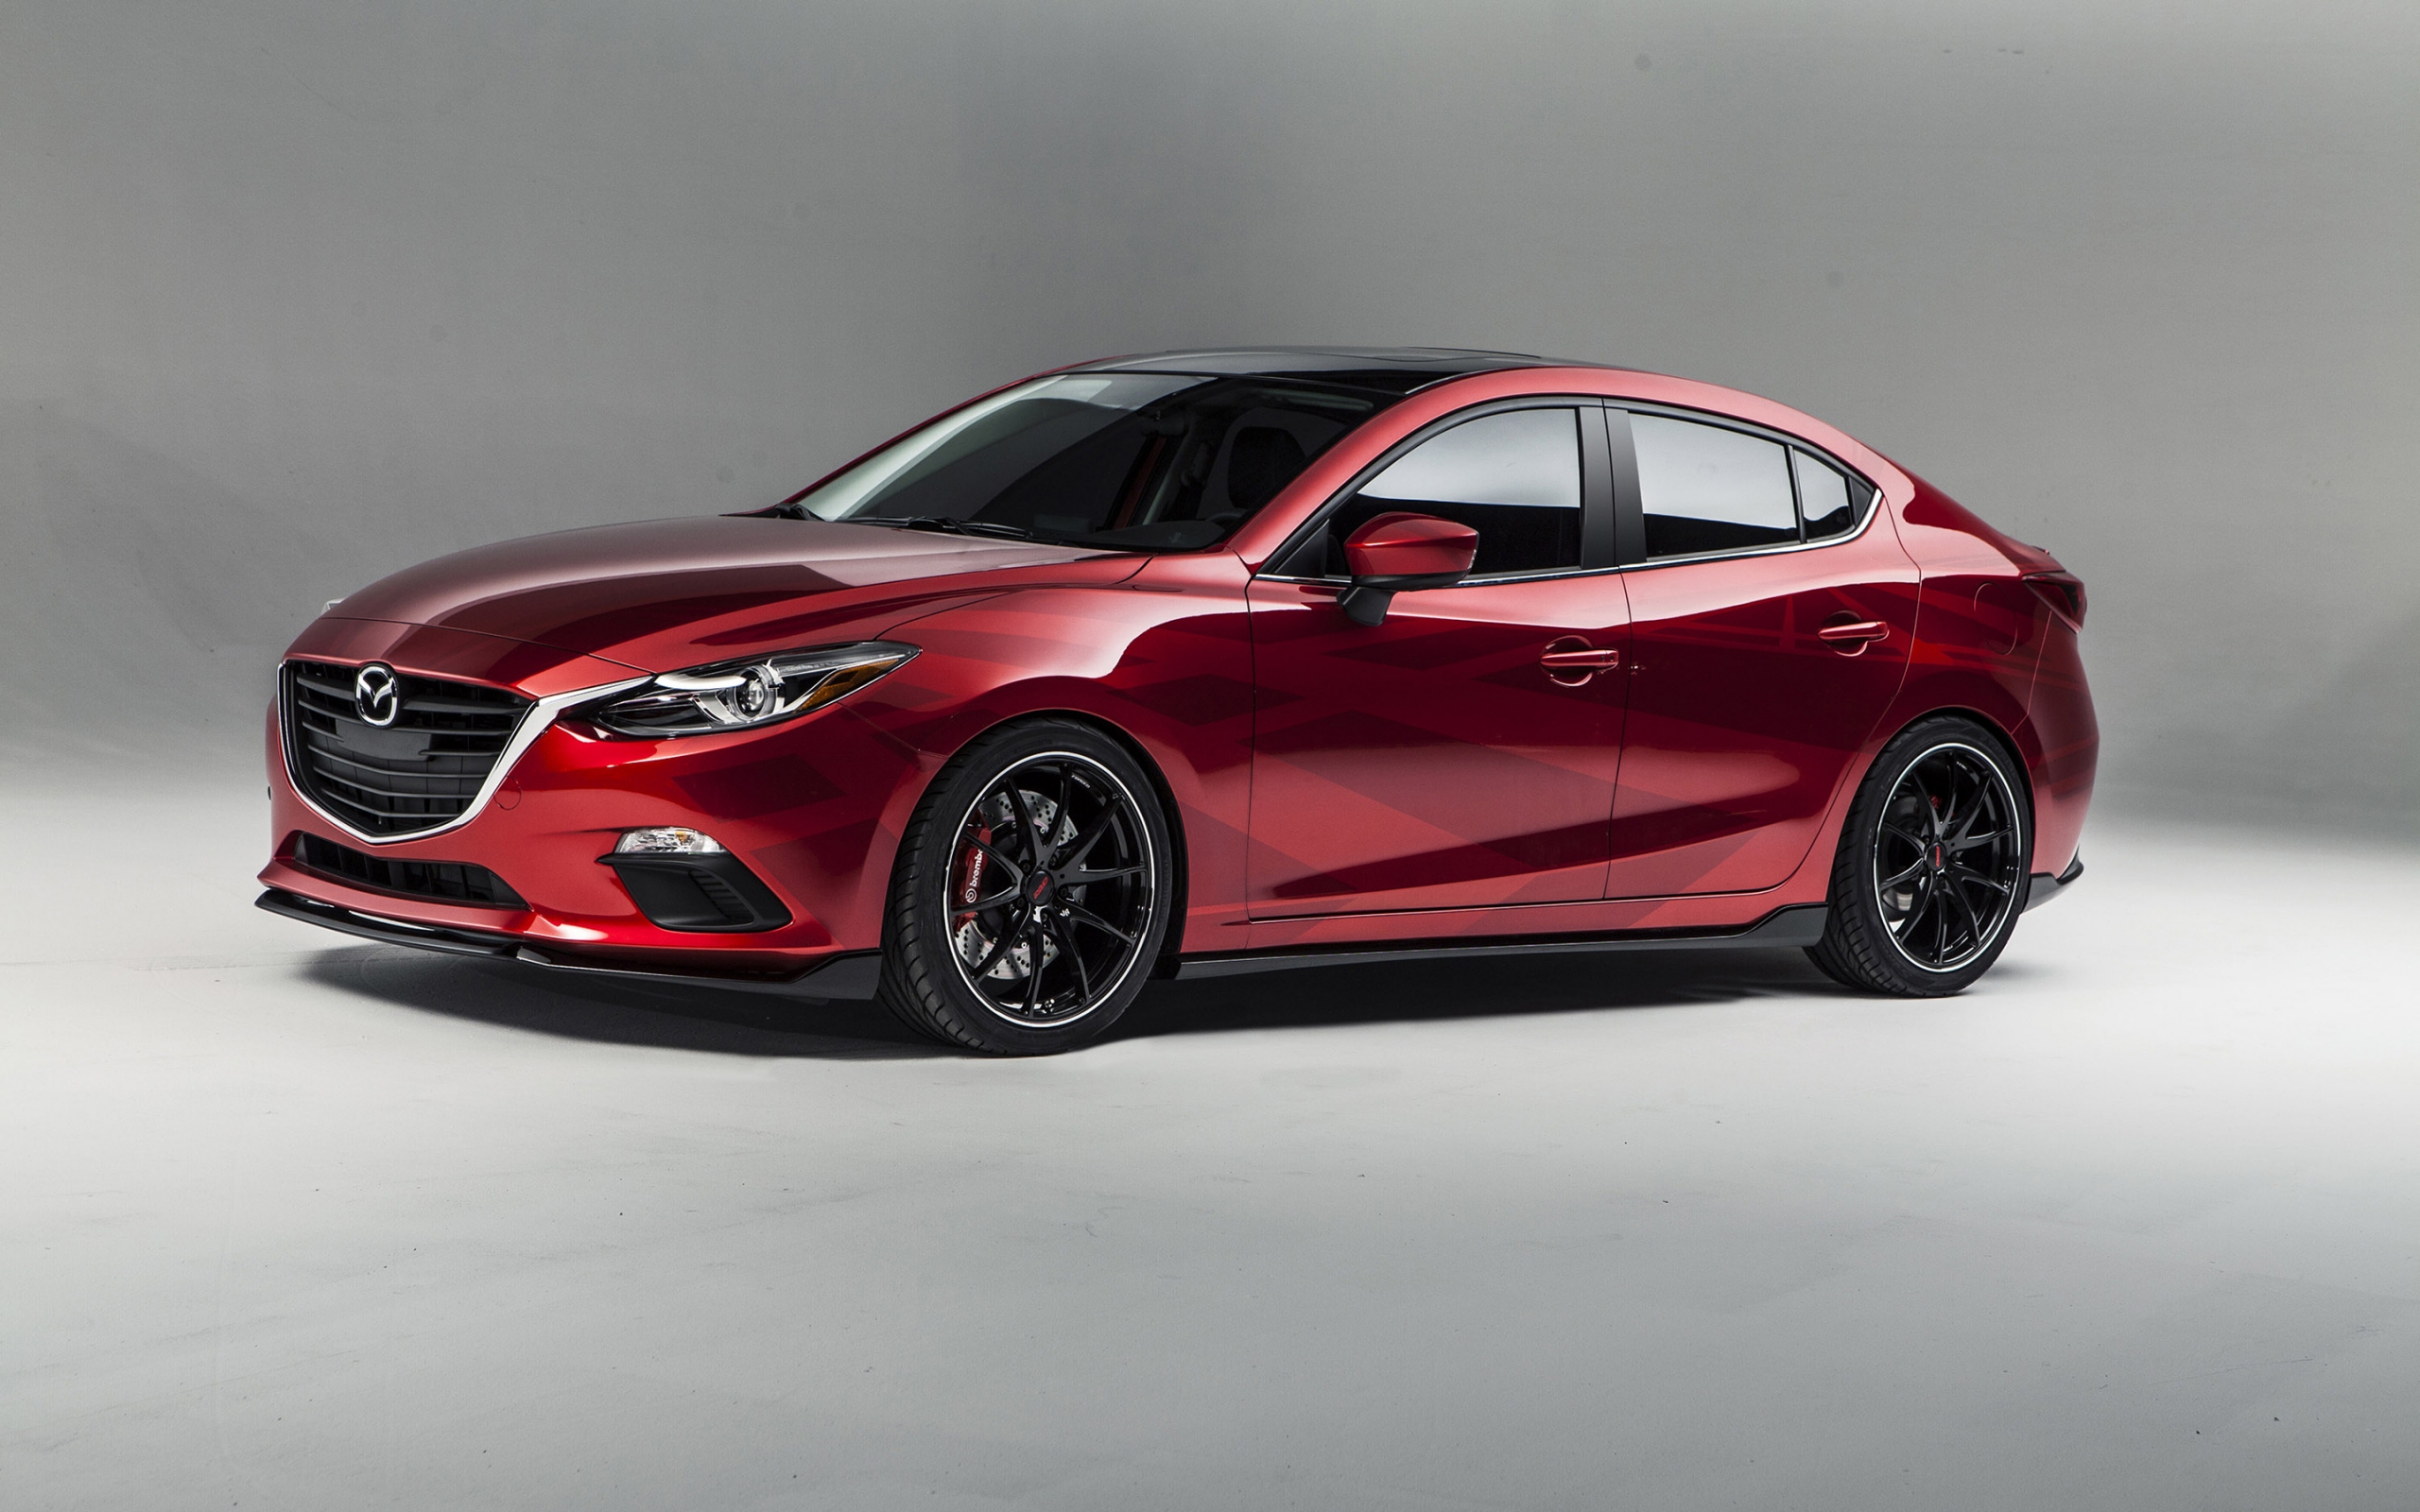 2013 Mazda Sema Concept for 2560 x 1600 widescreen resolution